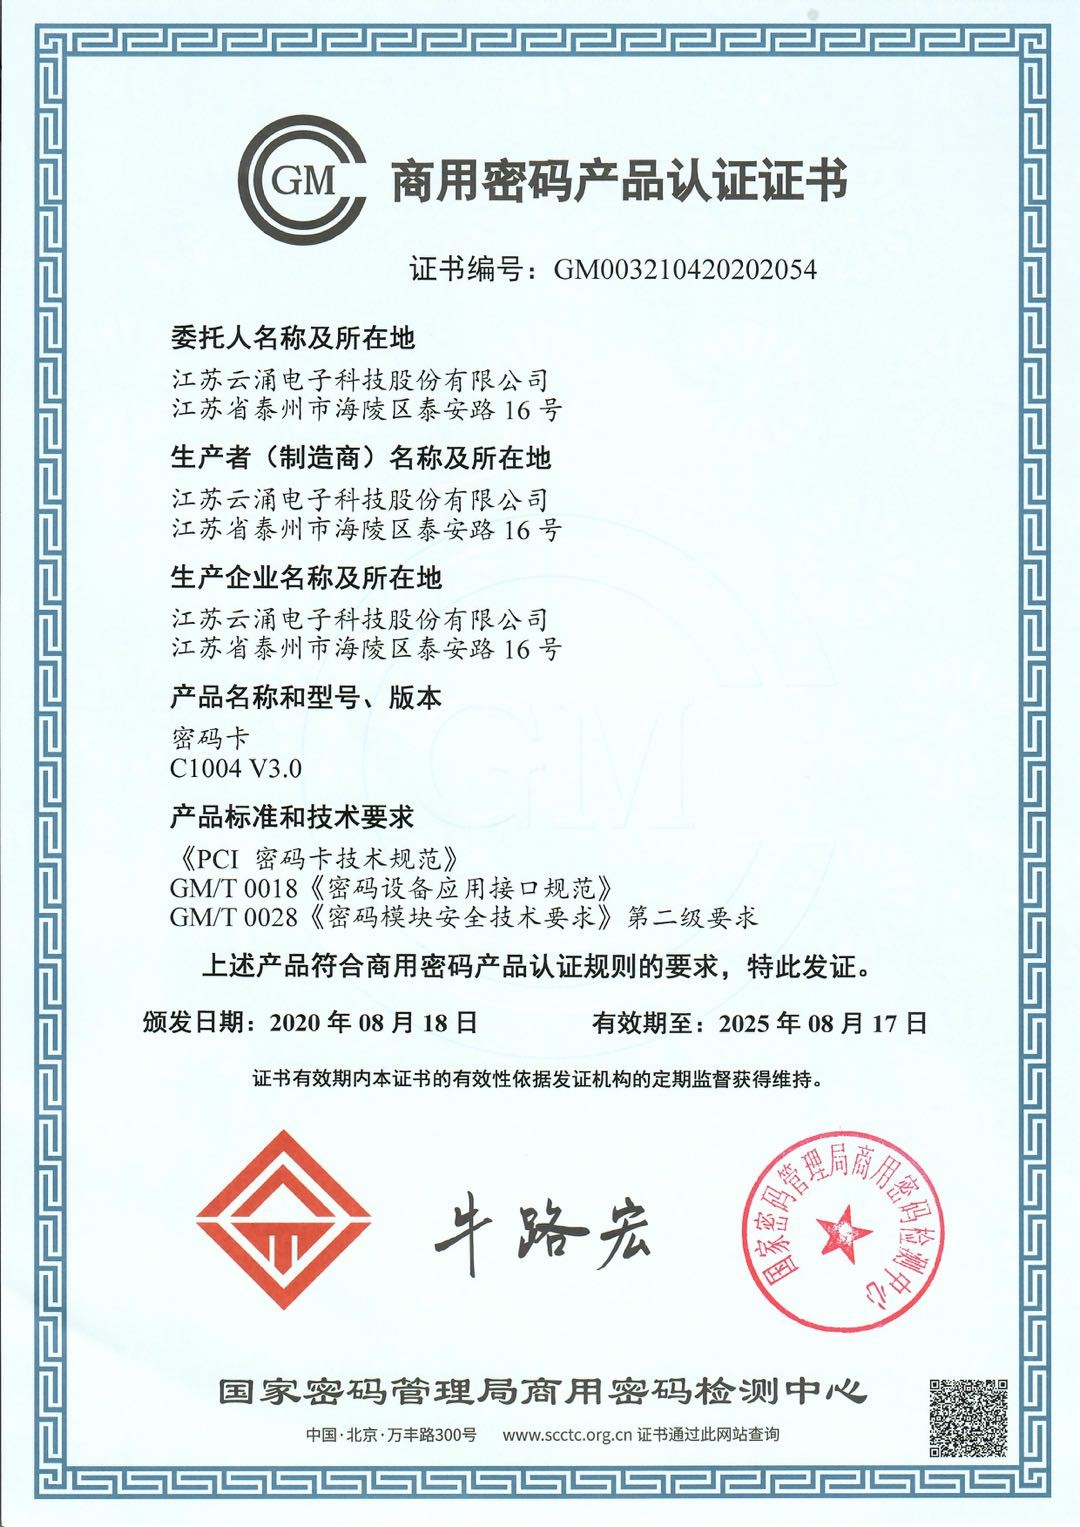 商用(yòng)密碼認證證書(shū)